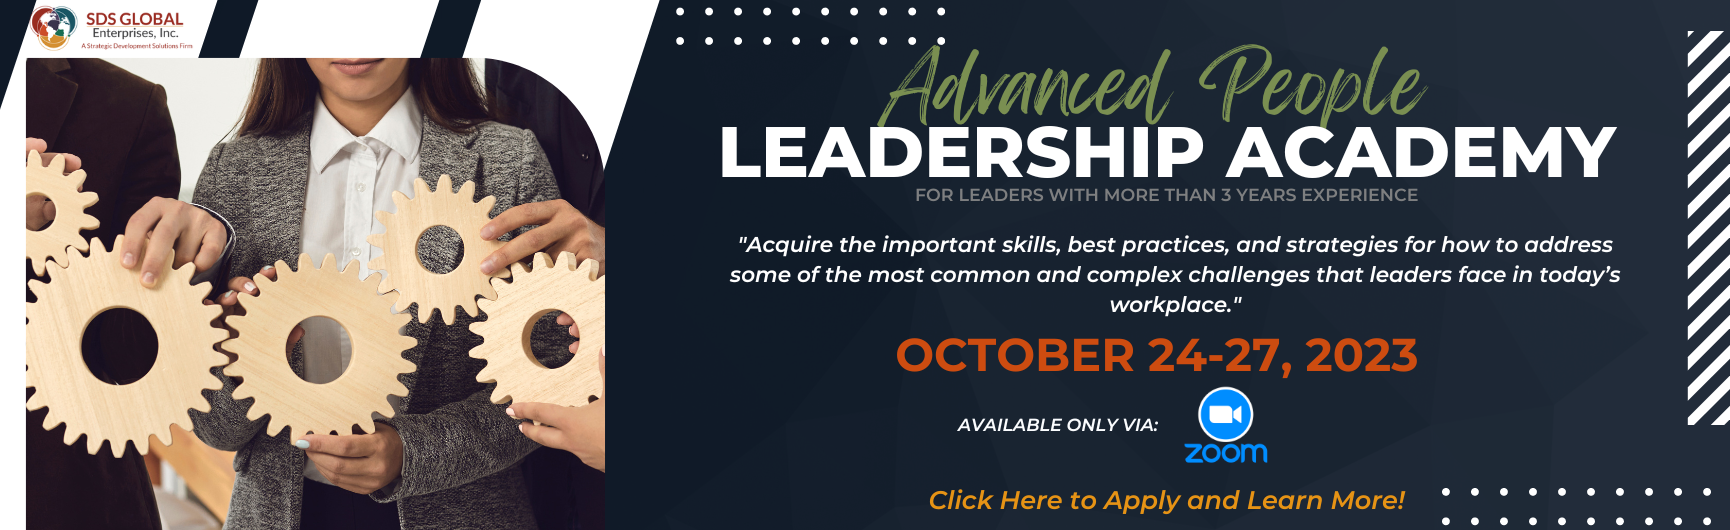 Advanced People Leadership Academy